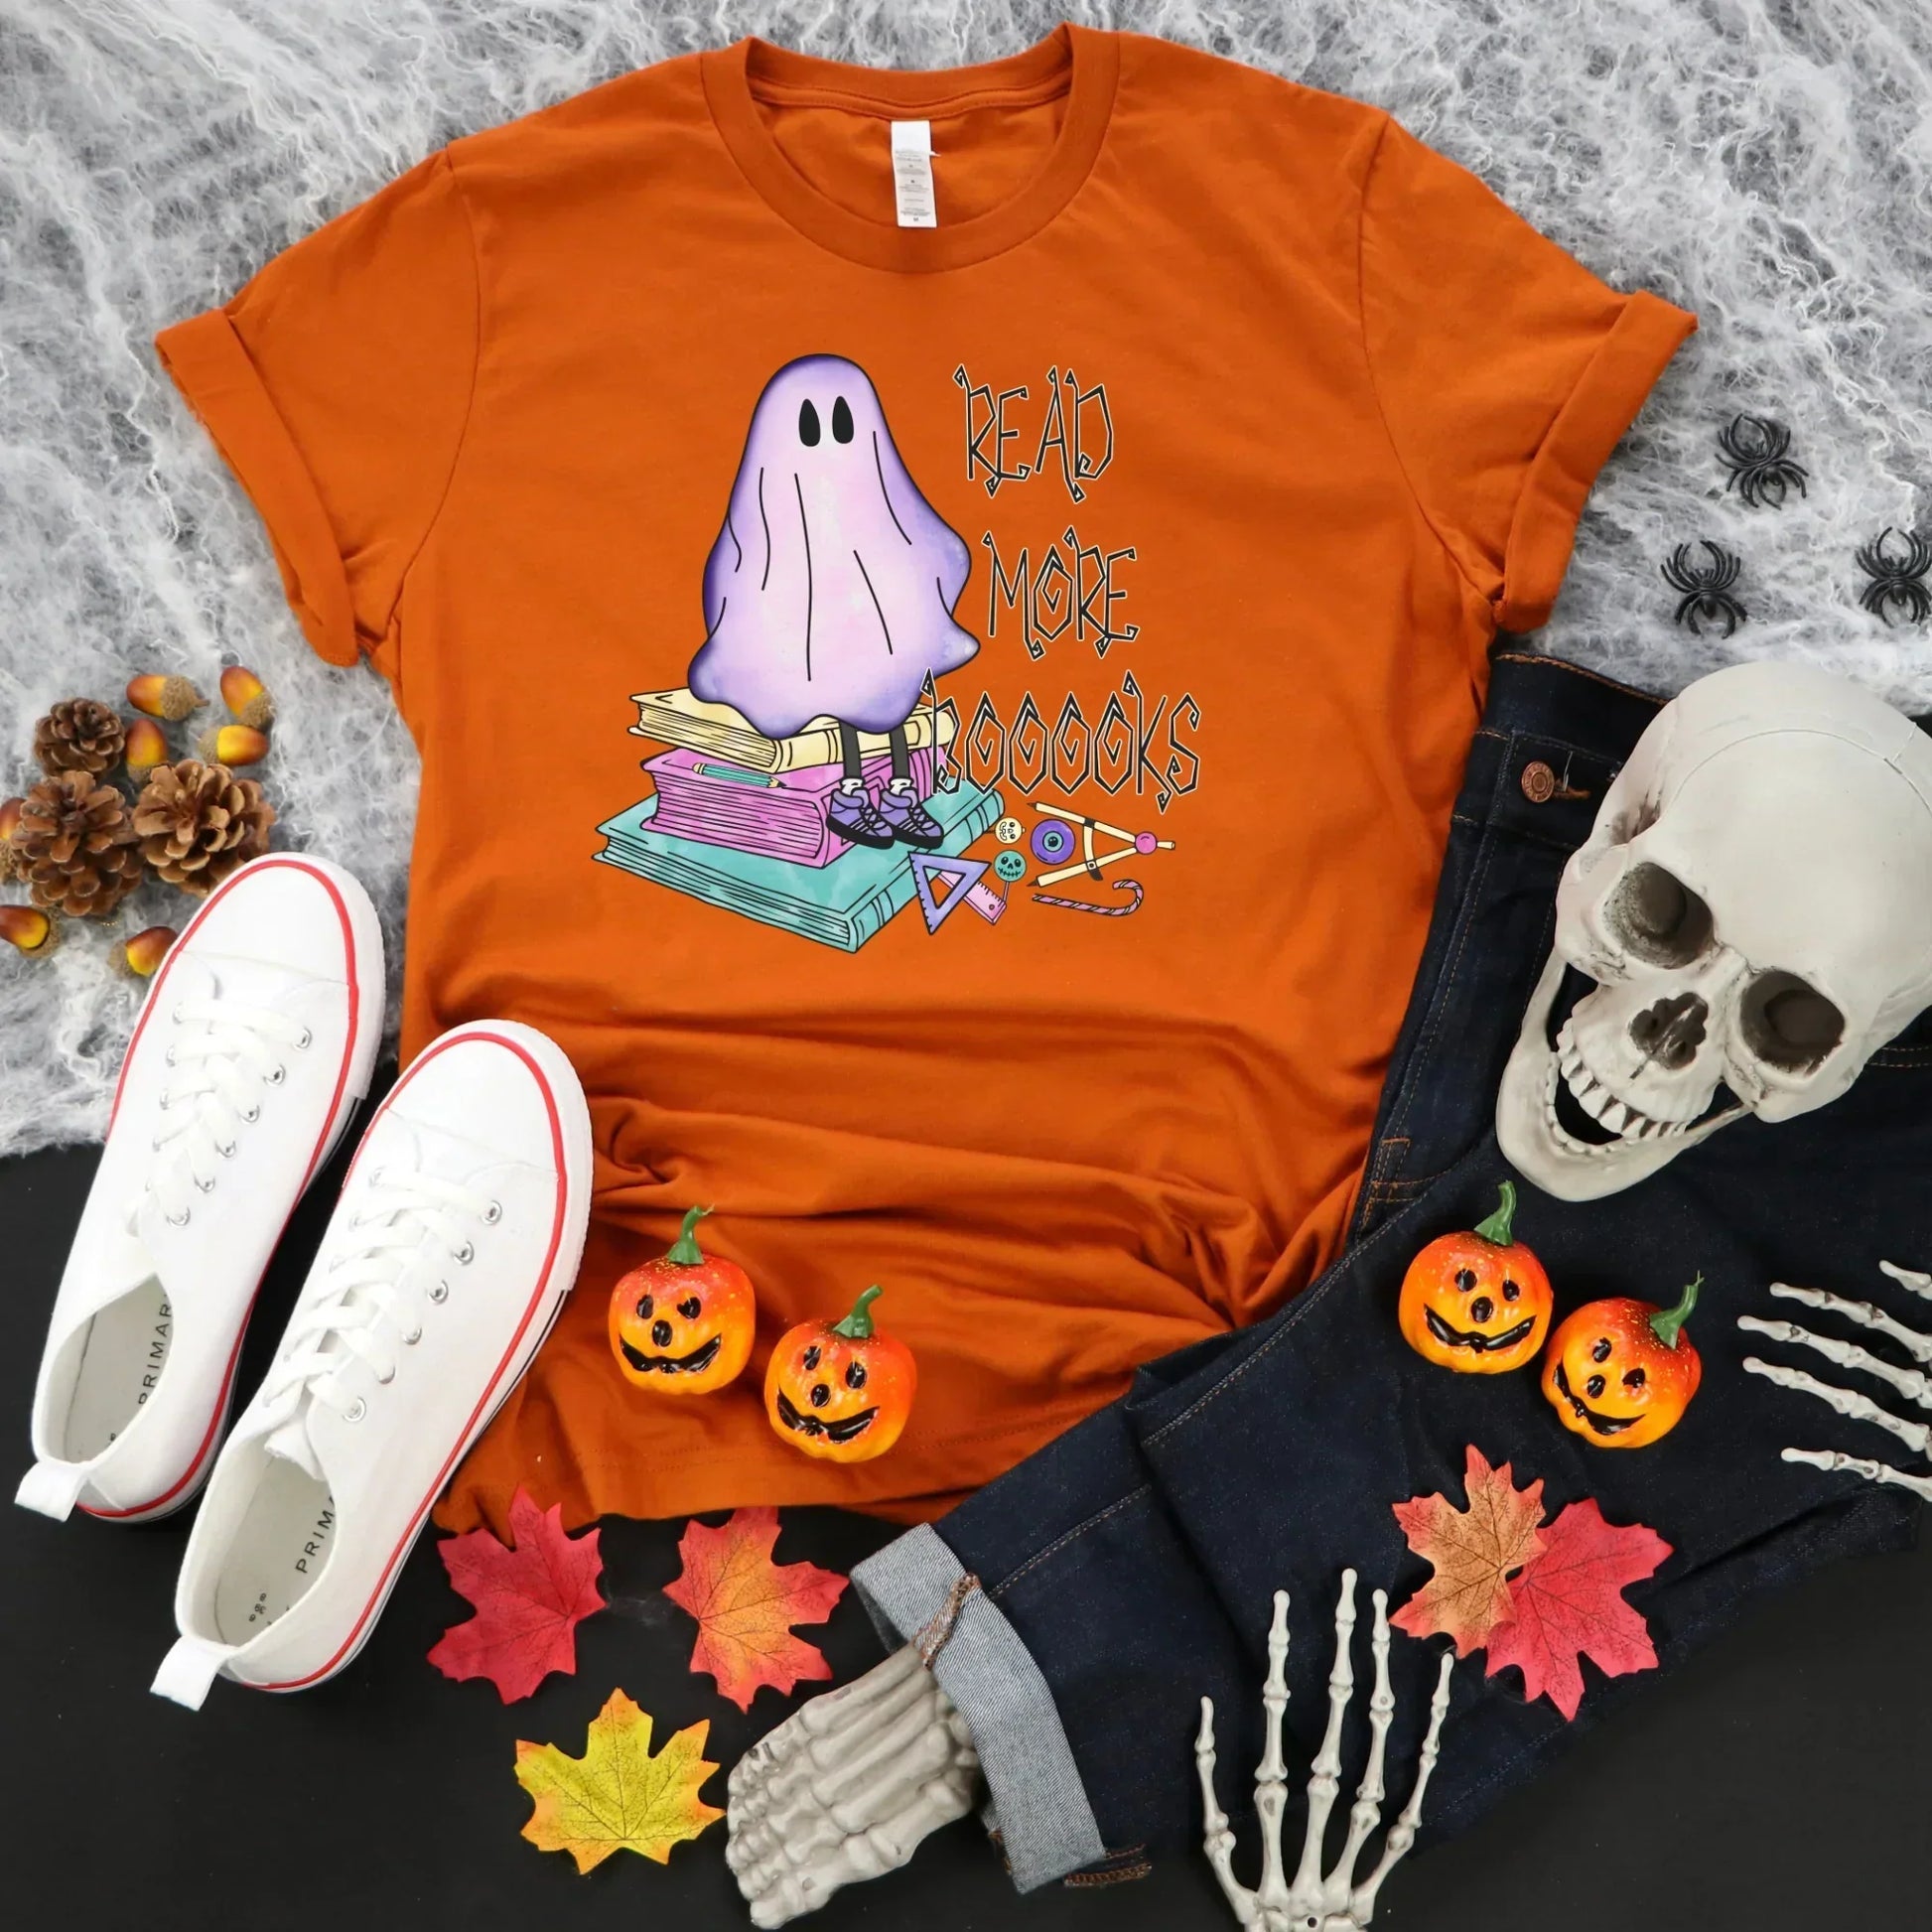 Halloween Teacher Shirt, Spooky Teacher, Halloween Ghost Shirt HMDesignStudioUS